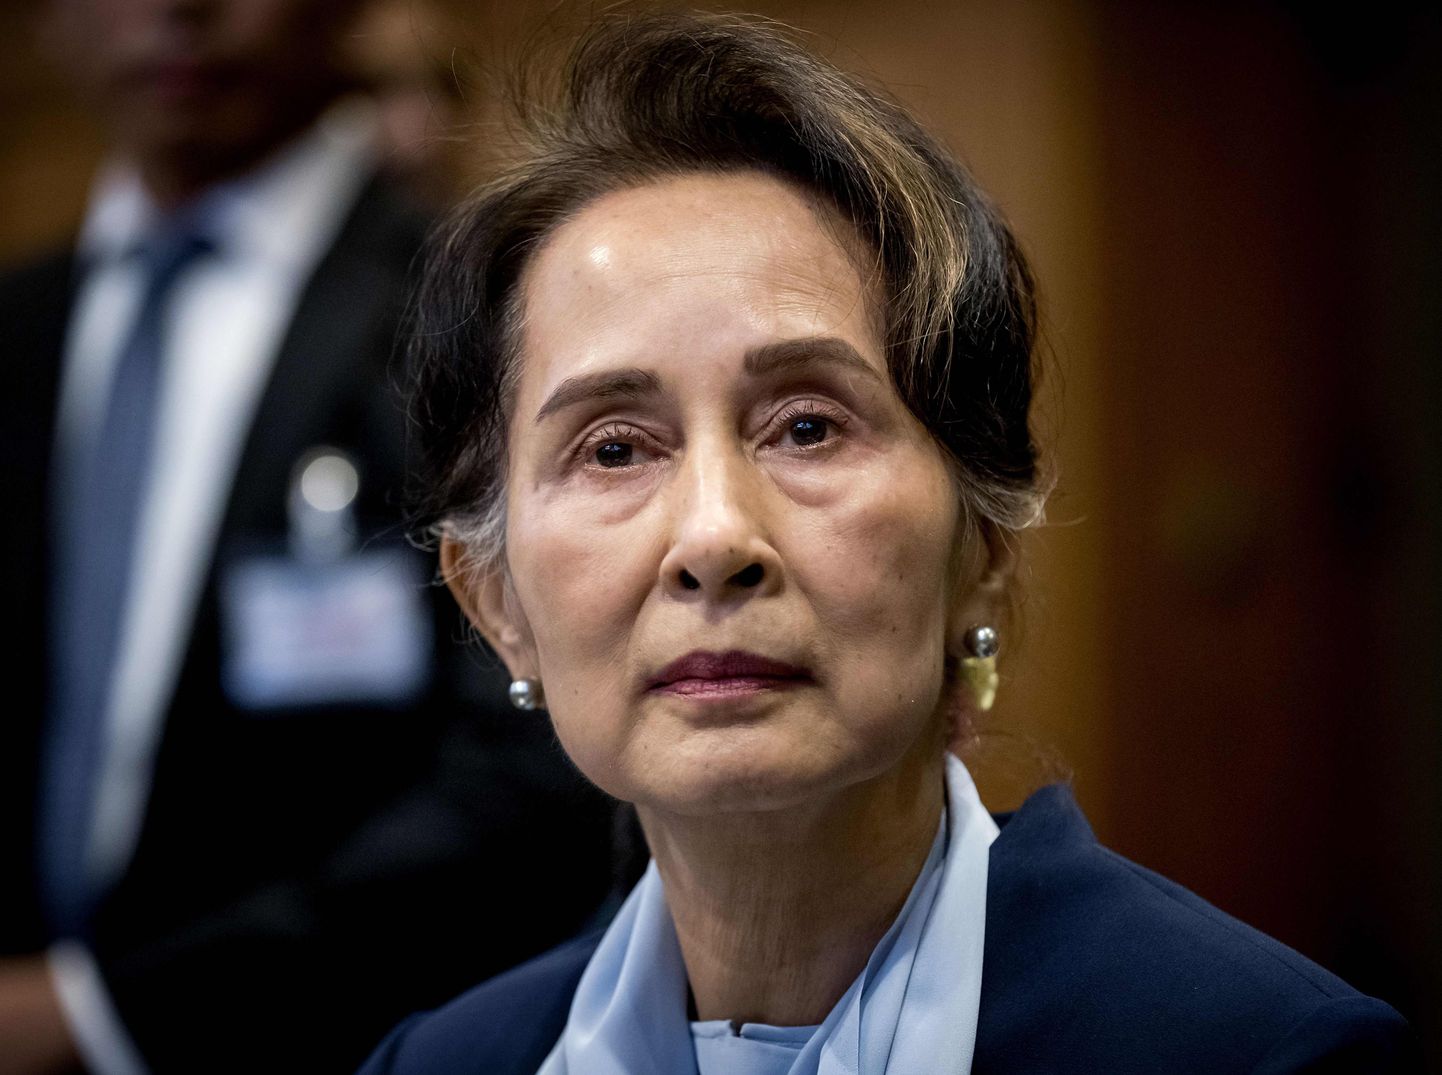 Myanmari riigipöördega kukutatud tsiviiljuht Aung San Suu Kyi, keda pole alates 2021. aastast pea kordagi avalikkuse ees nähtud. 11. detsember 2019.